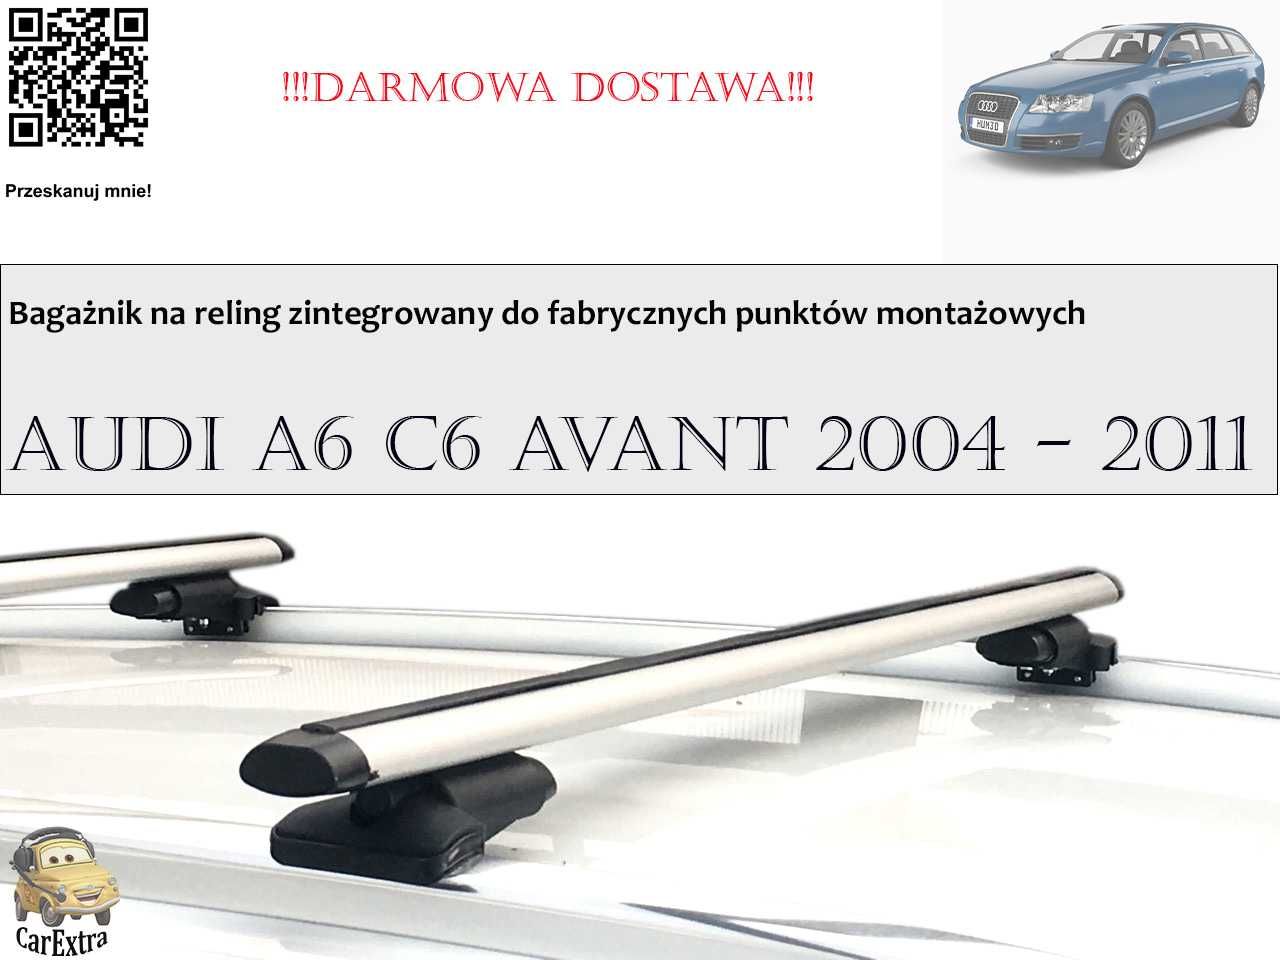 Bagażnik Dachowy do Audi A6 C6 Avant 2004 - 2011